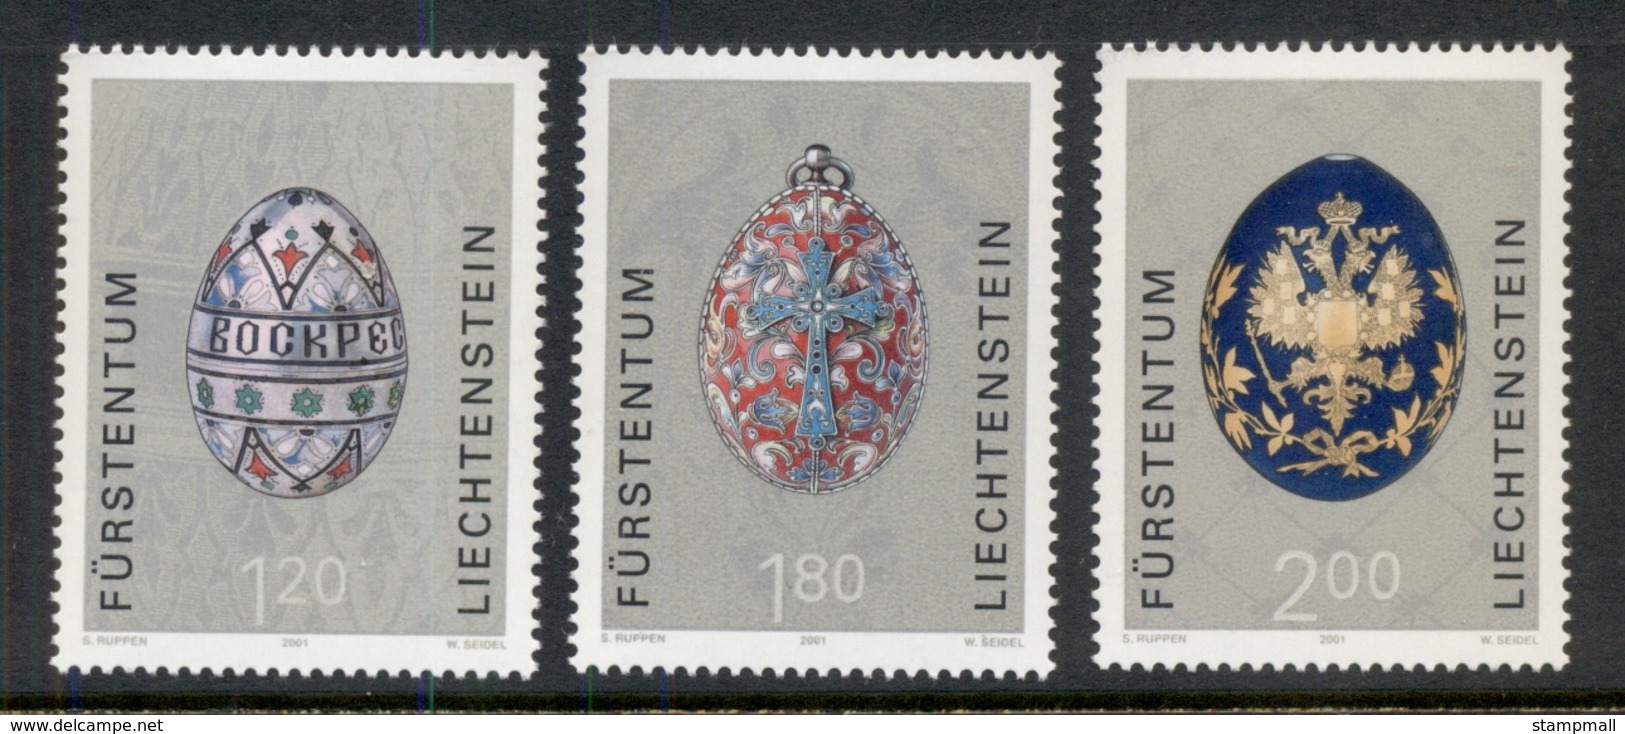 Liechtenstein 2001 Russian Easter Eggs MUH - Neufs